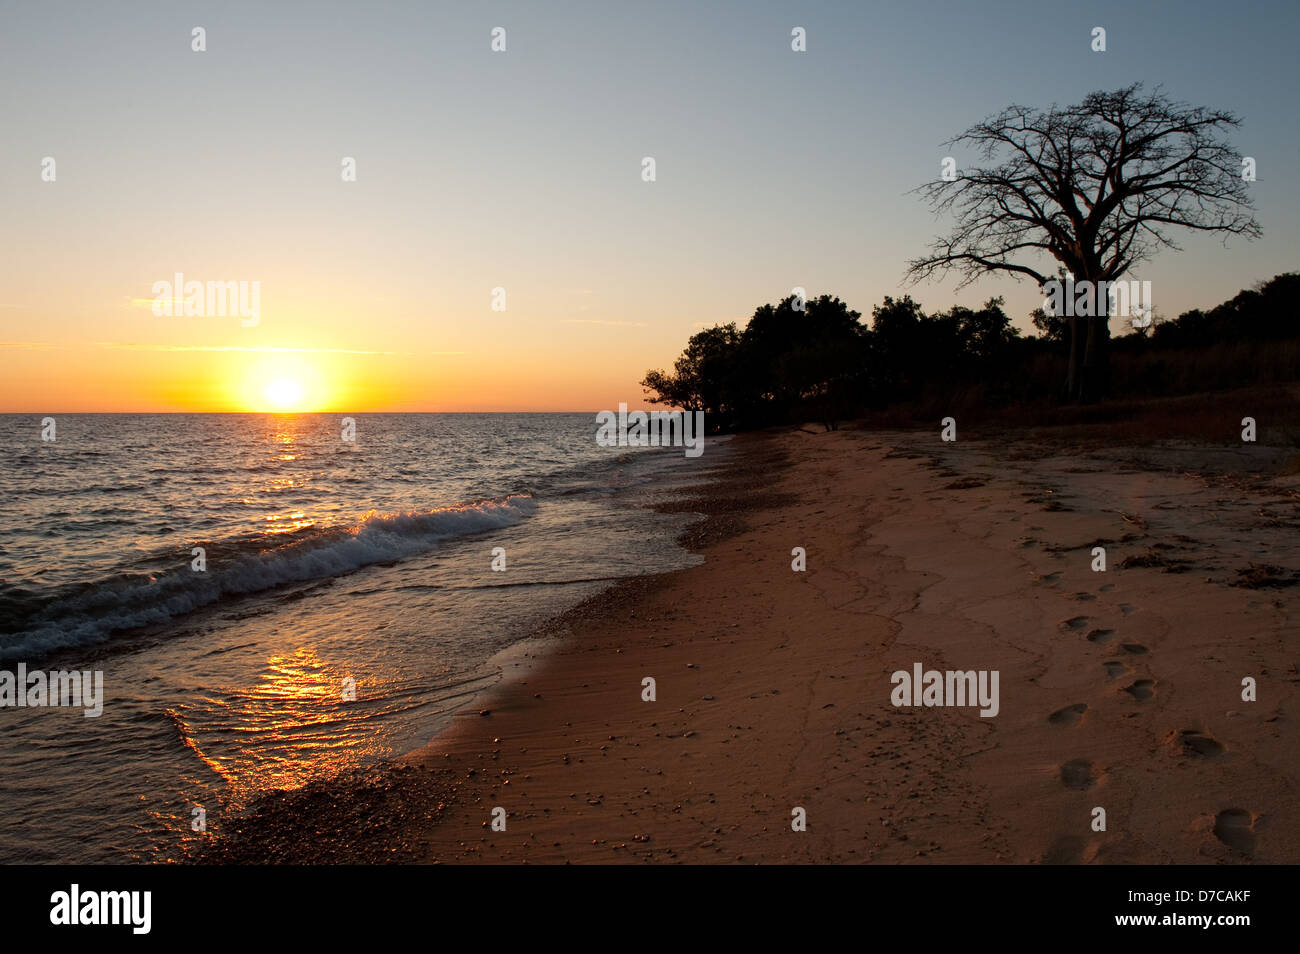 beach at sunset, lake Niassa, Mozambique Stock Photo